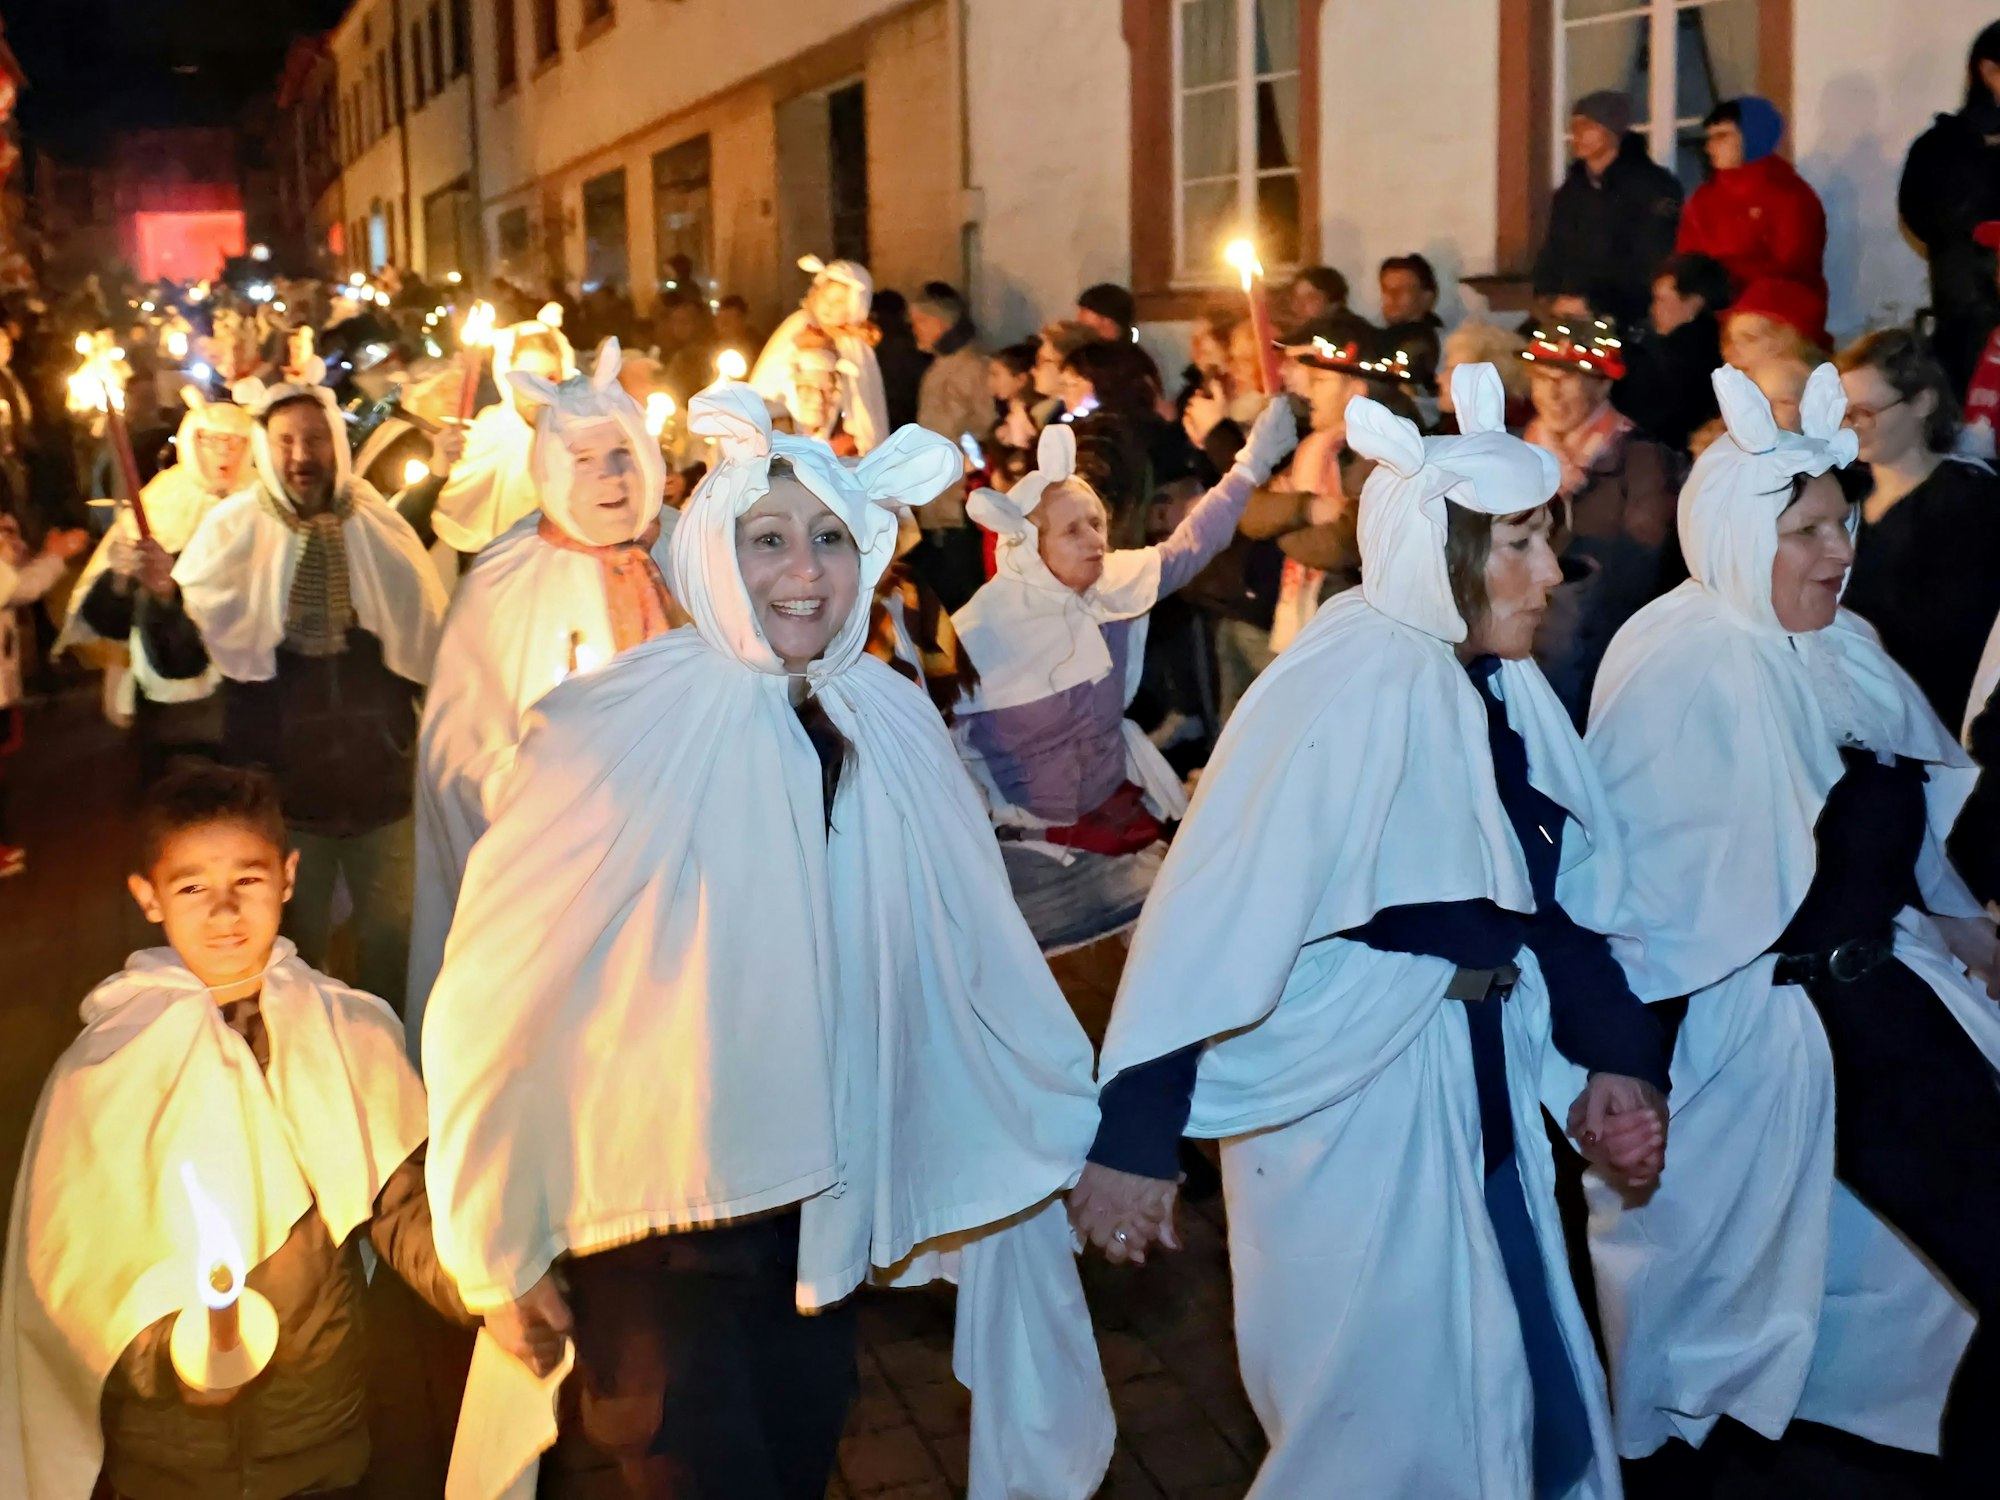 Der Zug der Geister zieht kreischend durch die Straßen von Blankenheim. Die Teilnehmer sind mit weißen Bettlaken verkleidet, viele tragen Pechfackeln.